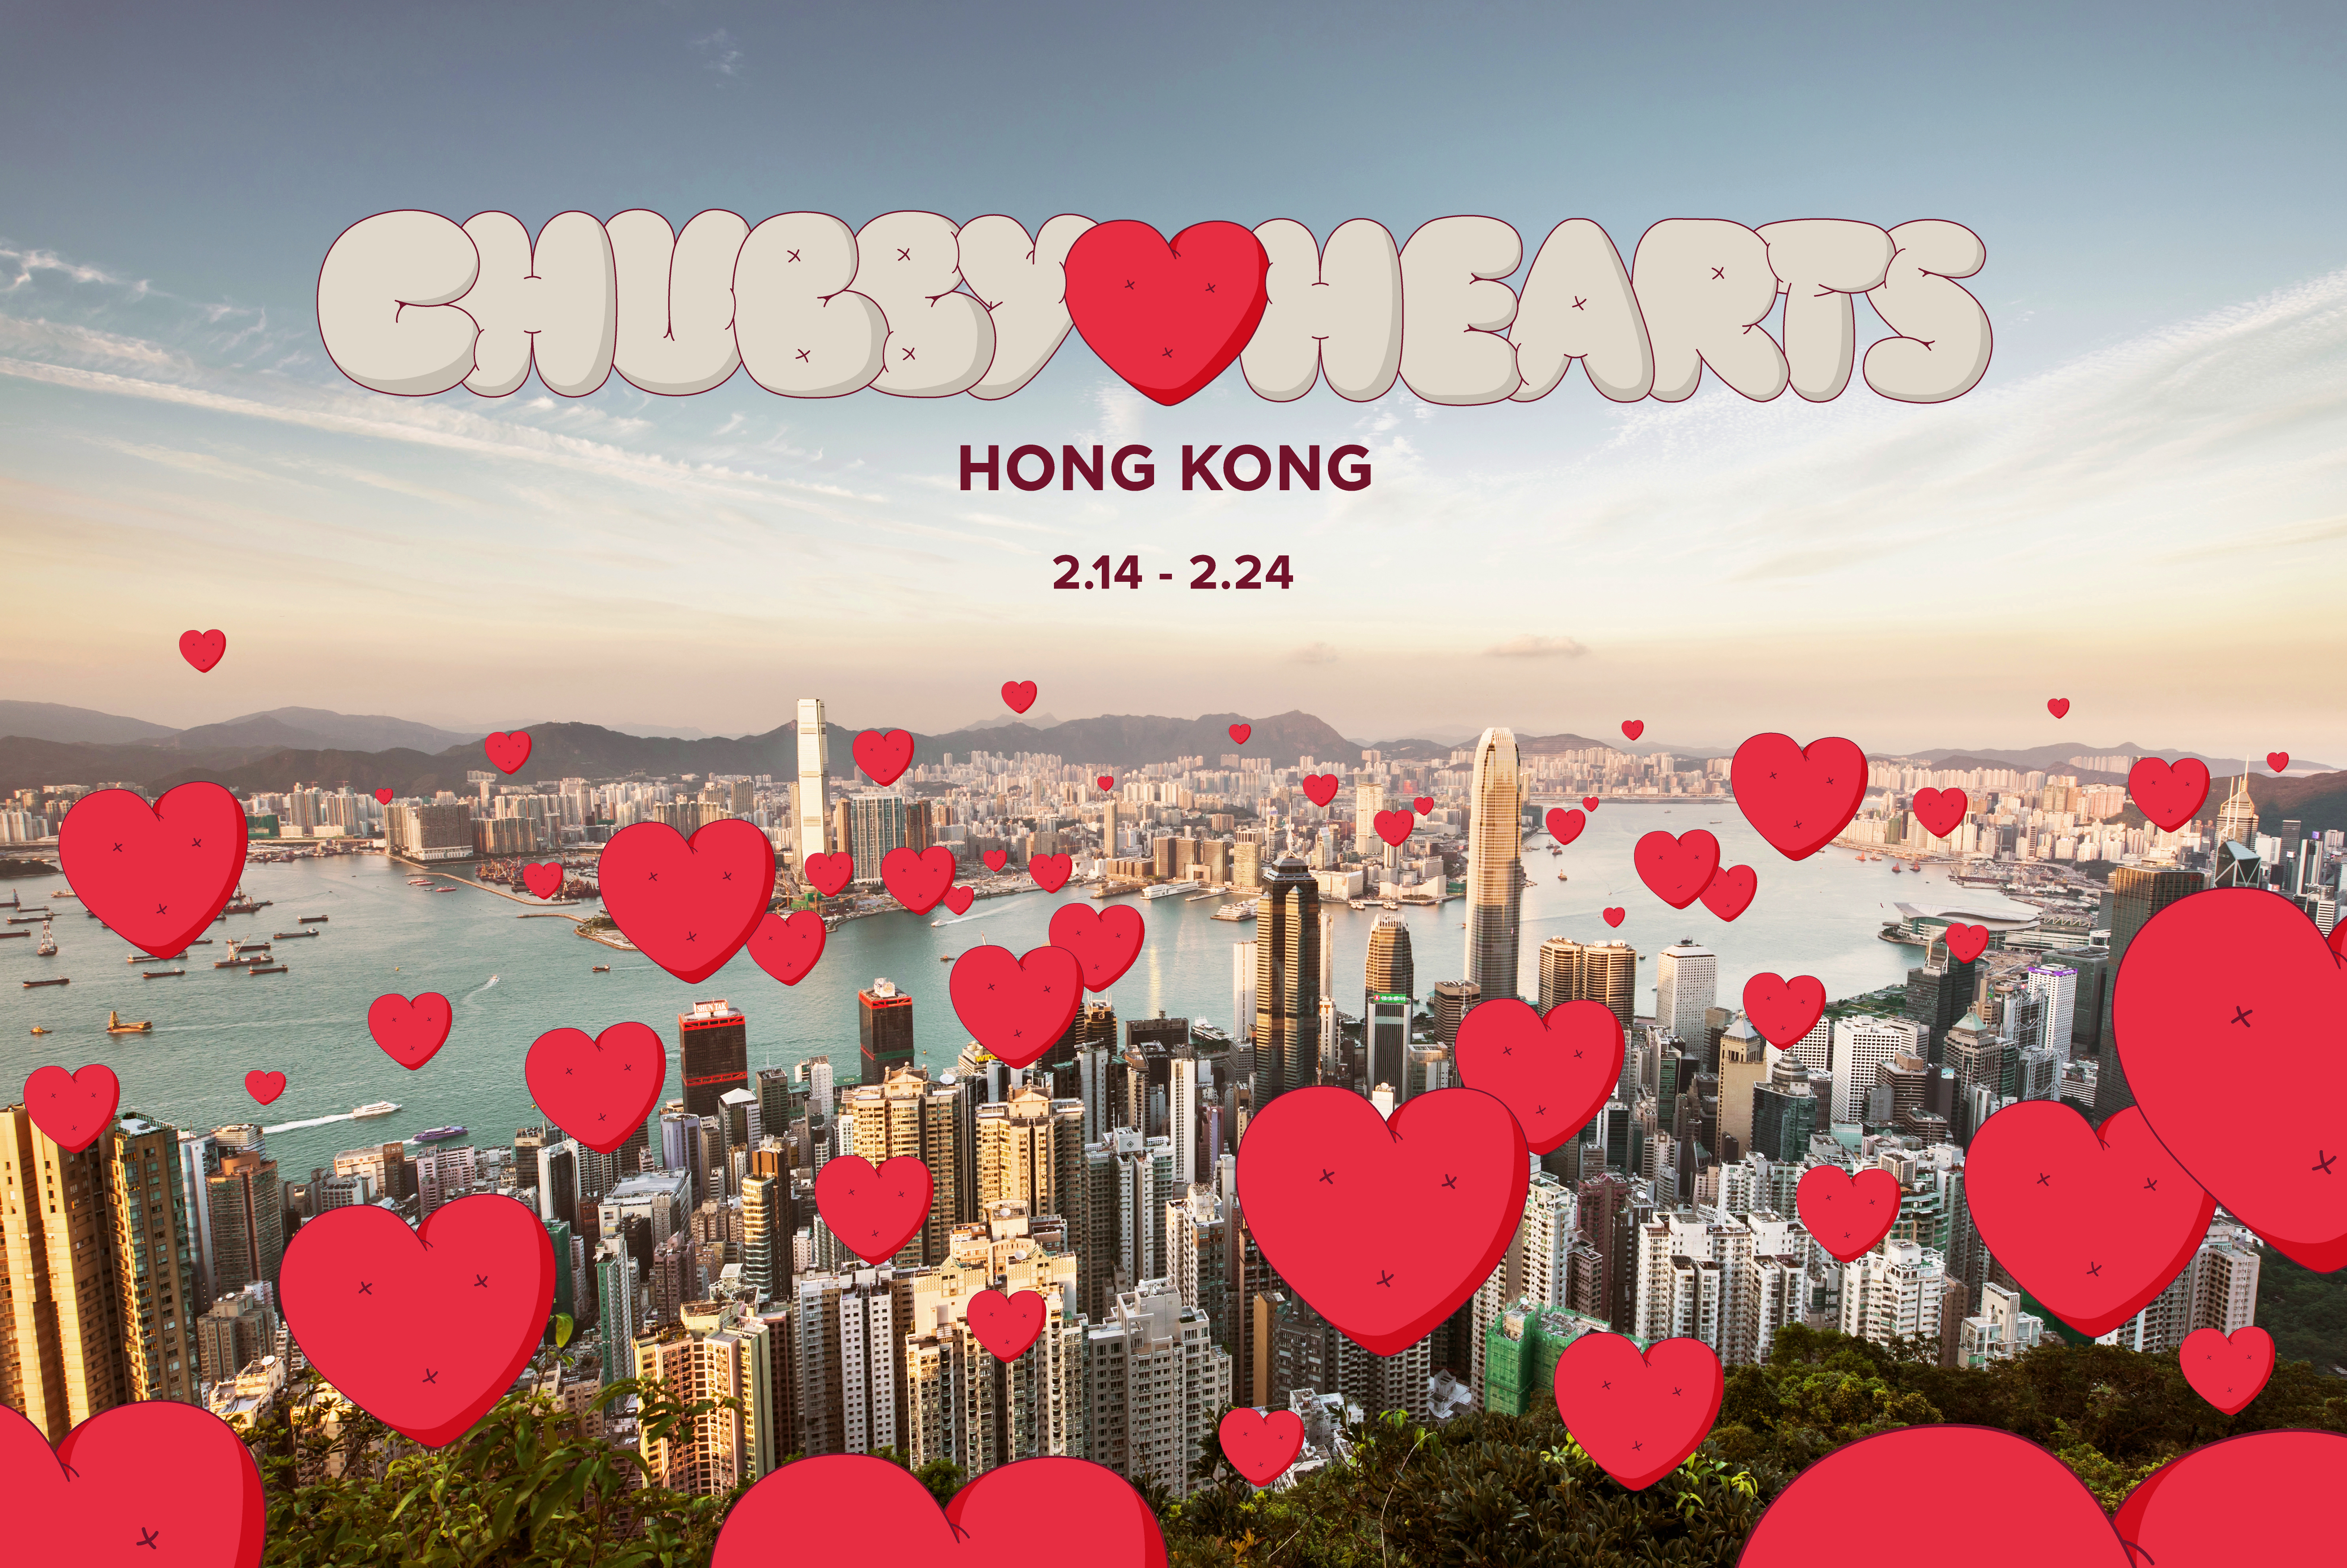 香港設計中心呈獻「Chubby Hearts Hong Kong」   巨型紅心飄浮香港天際   傳遞愛的訊息